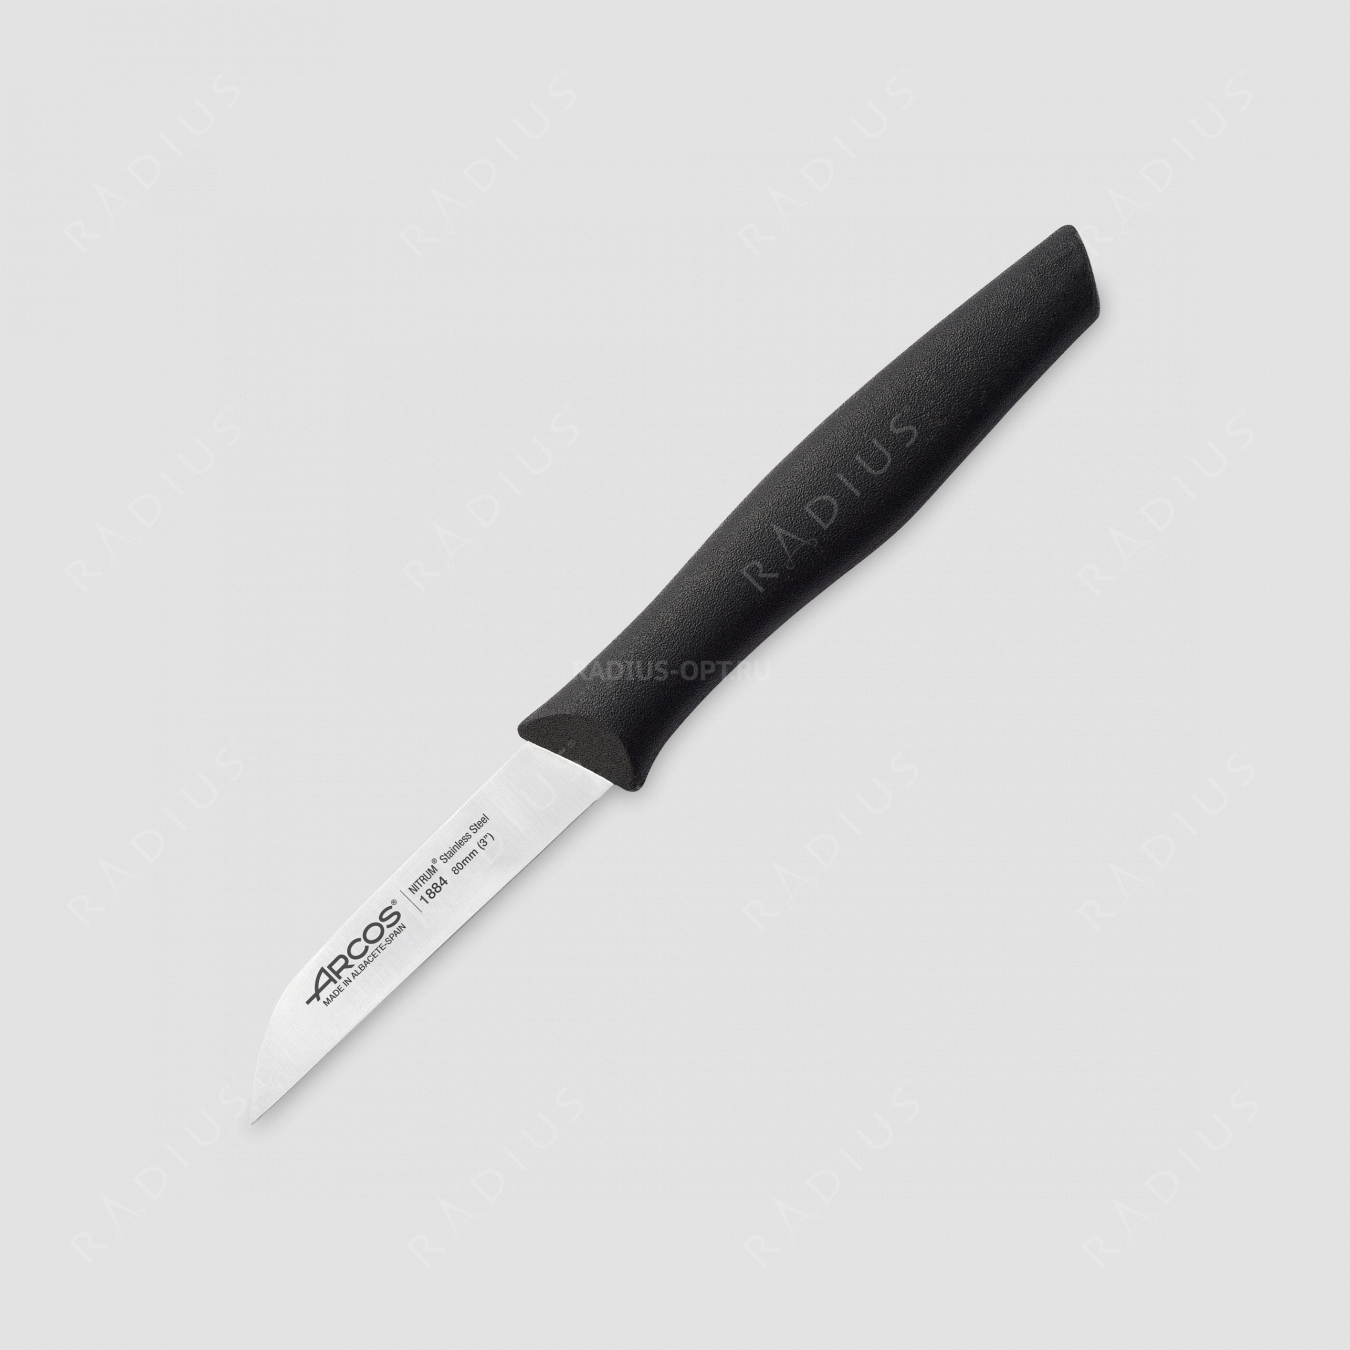 Нож кухонный для чистки 8 см, рукоять черная, серия Nova, ARCOS, Испания